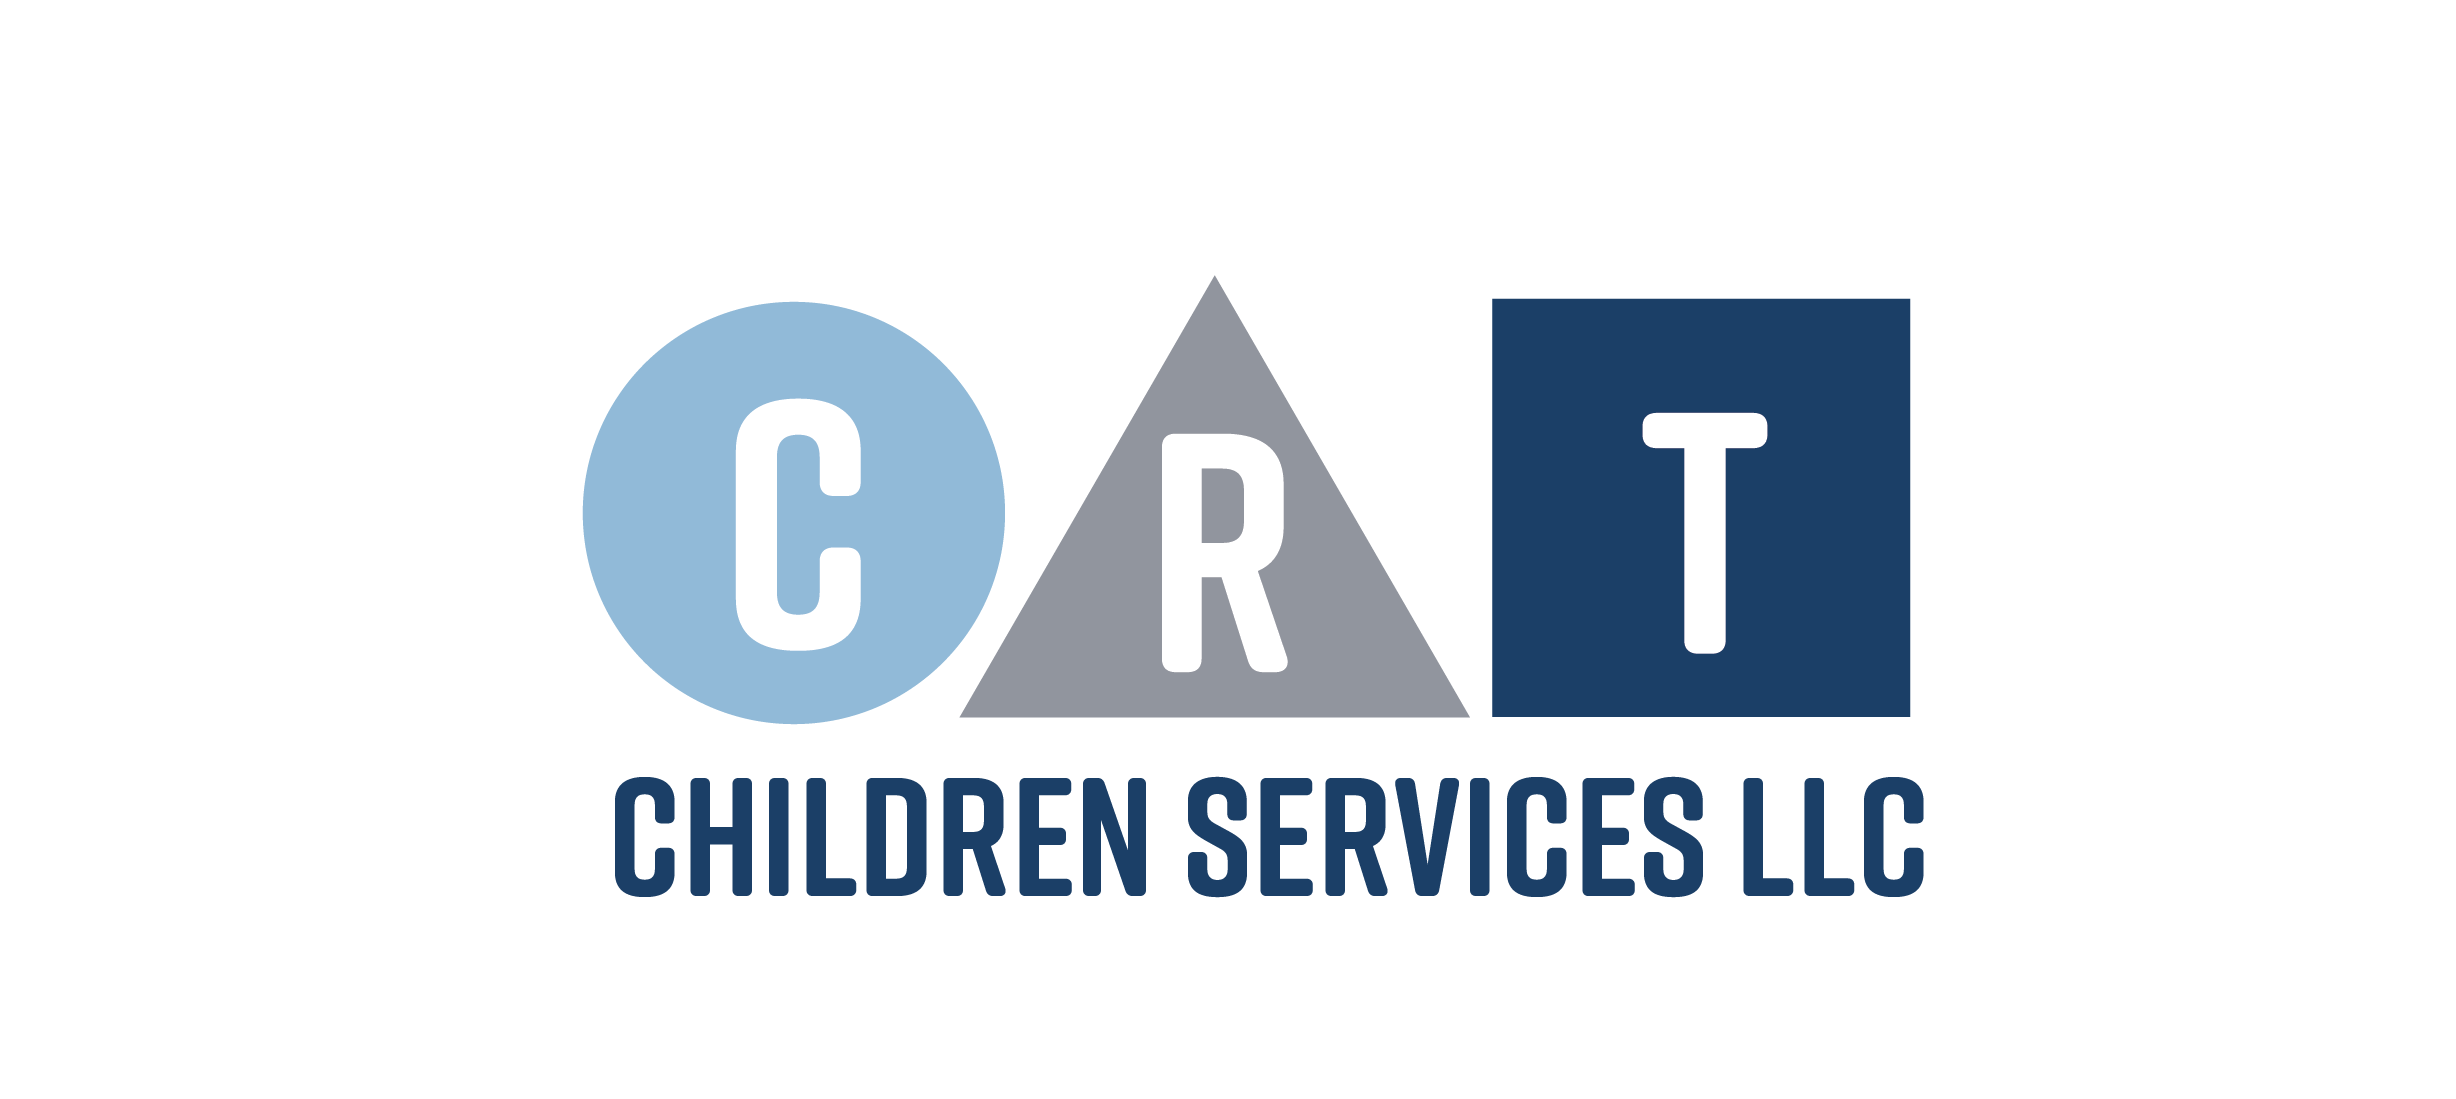 CRT Children Services